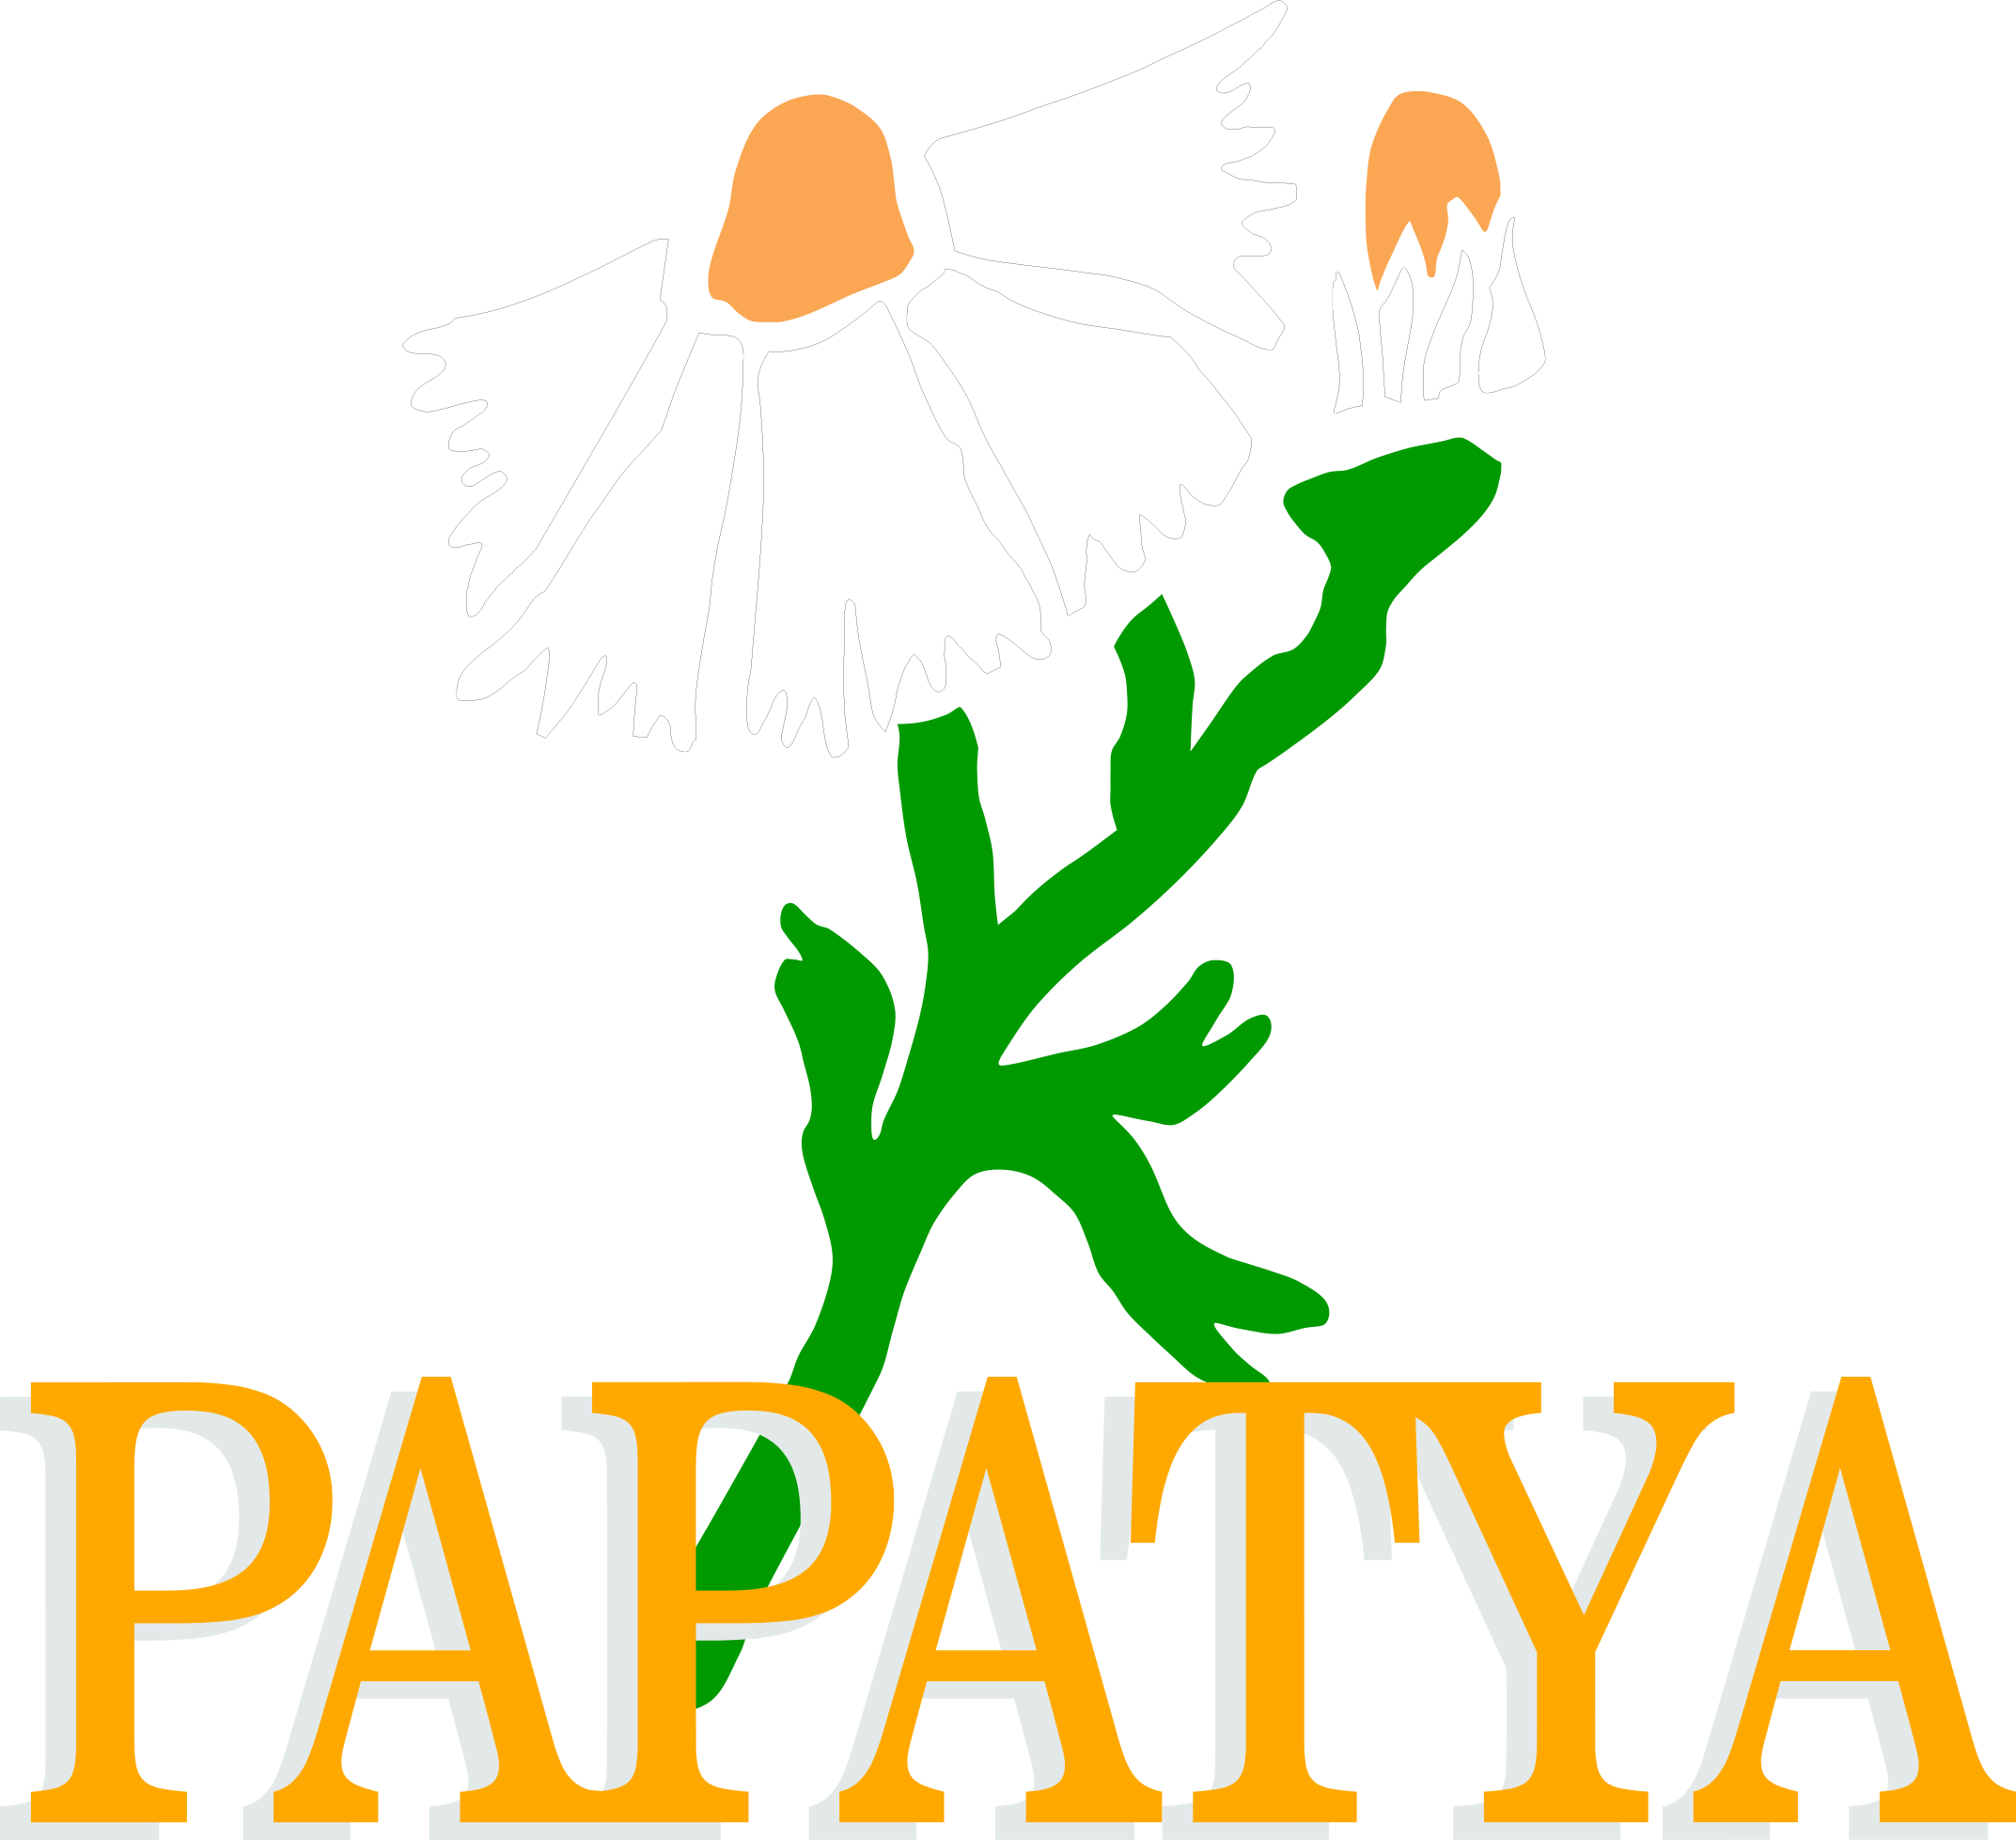 papatya